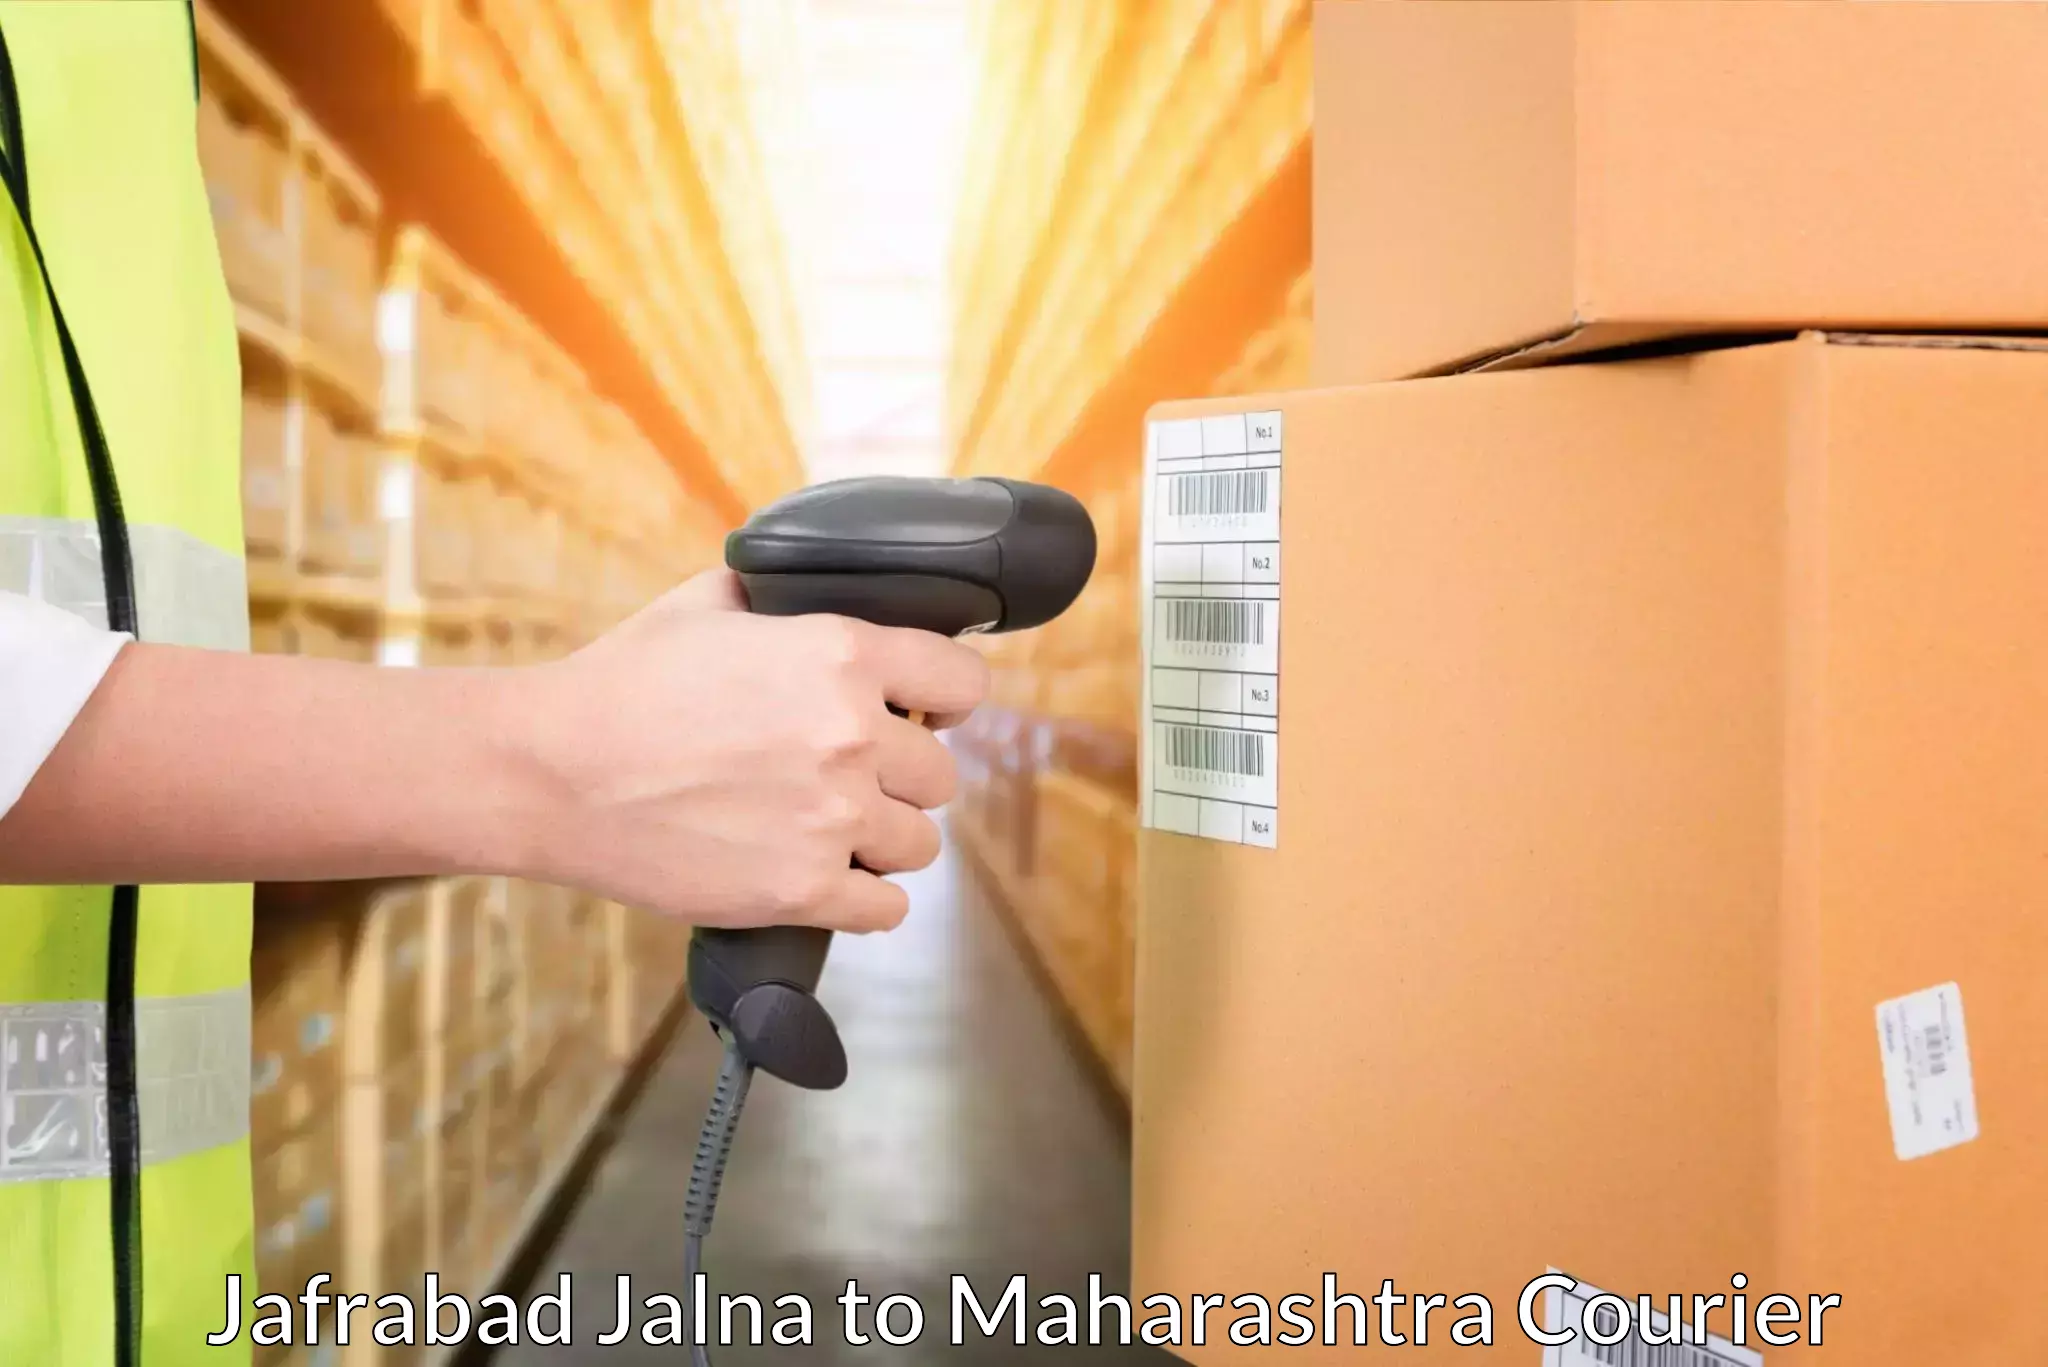 Expedited parcel delivery in Jafrabad Jalna to Karjat